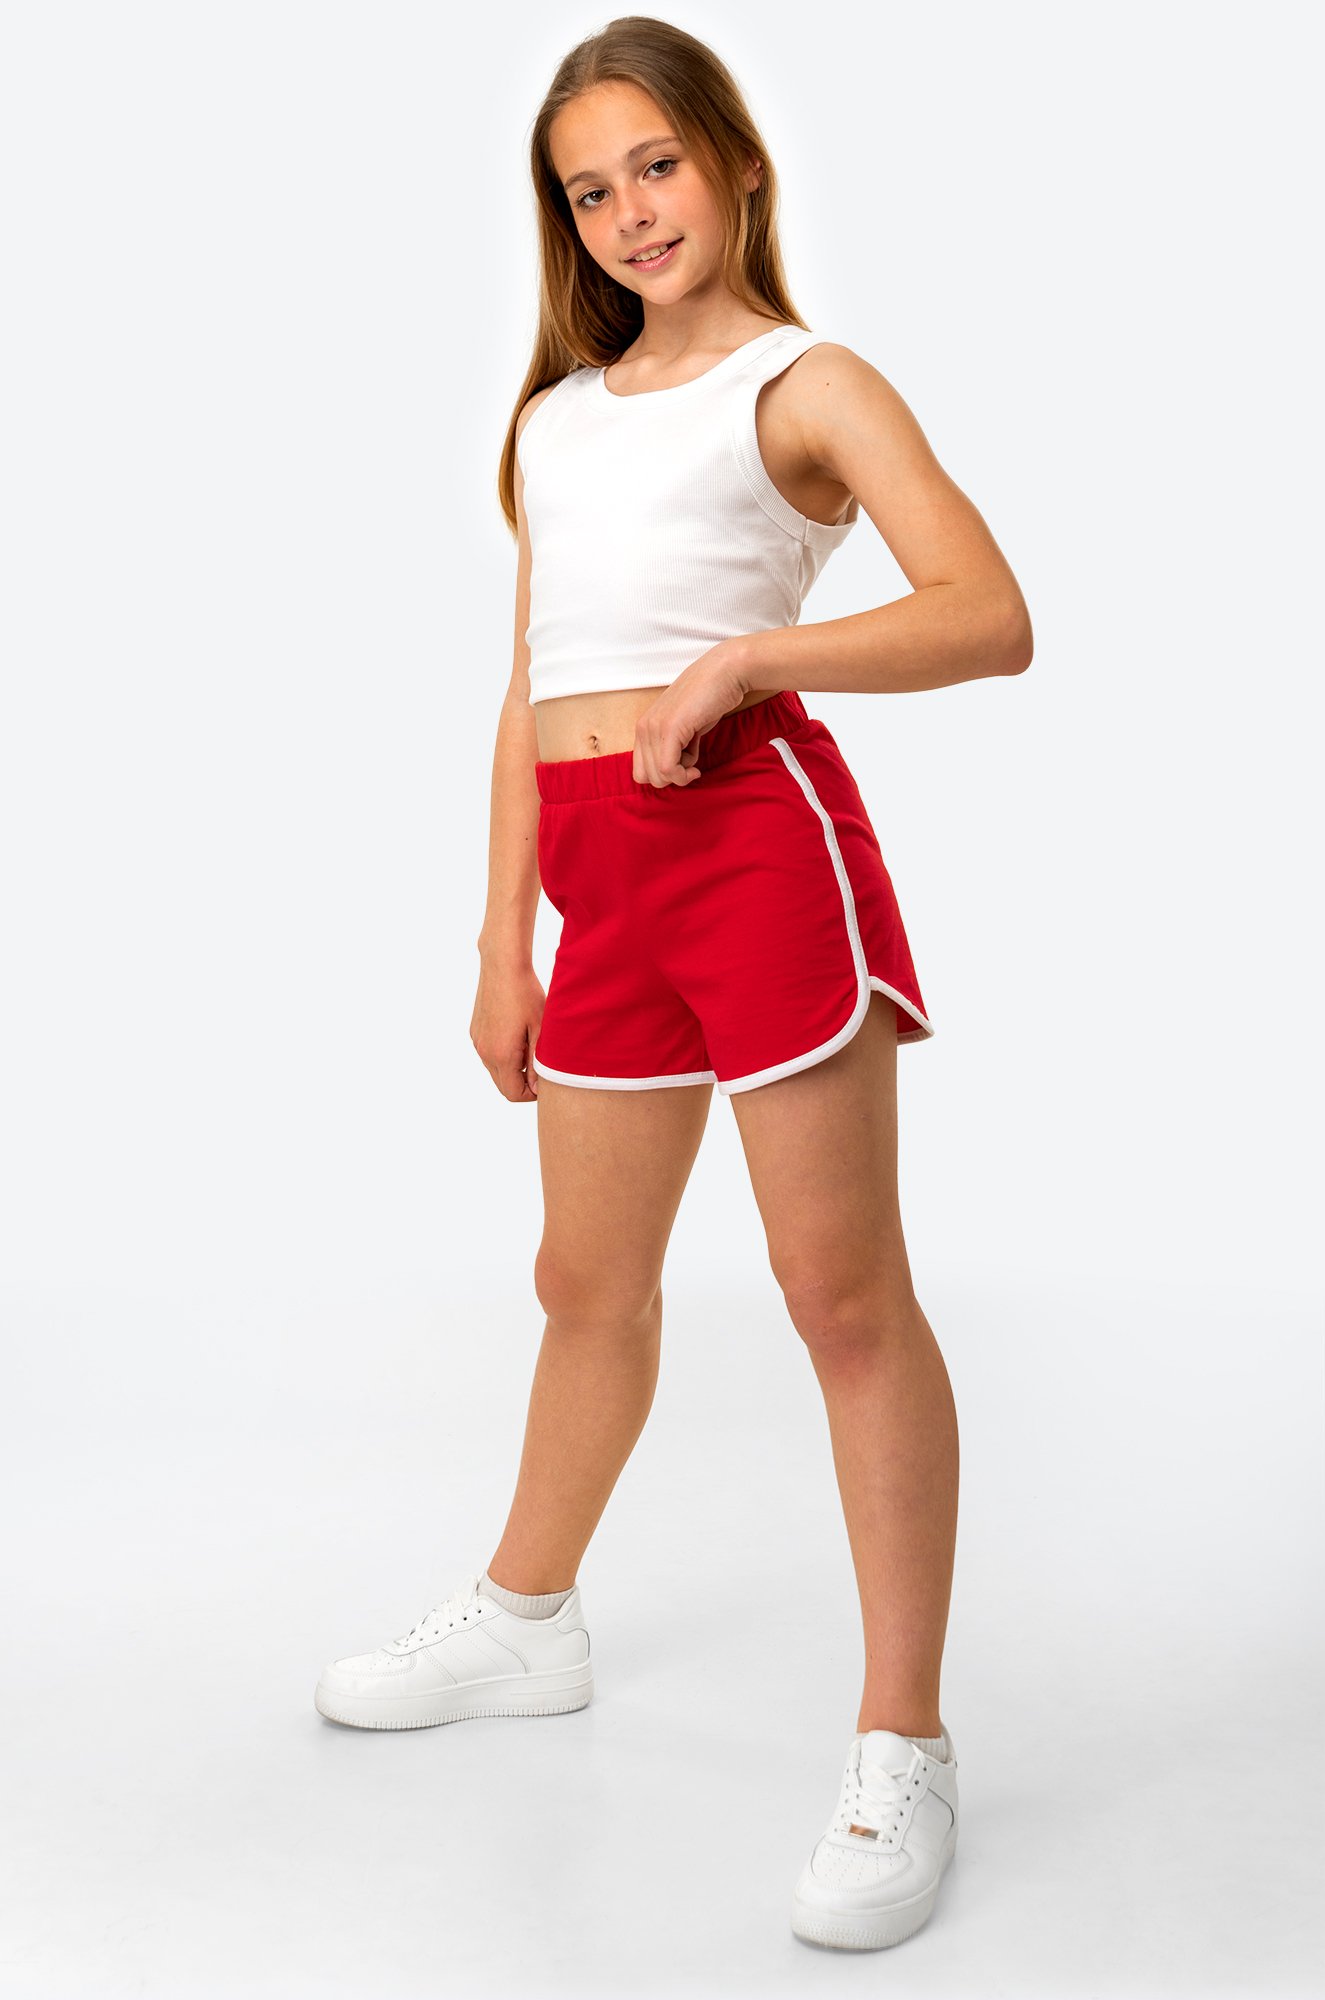 Шорты 164. Шортики спортивные для девочек подростков. Спортивные шорты для девочек подростков с вырезом. Покажи красные короткие спортивные шорты. Детский рост 164 шорты.